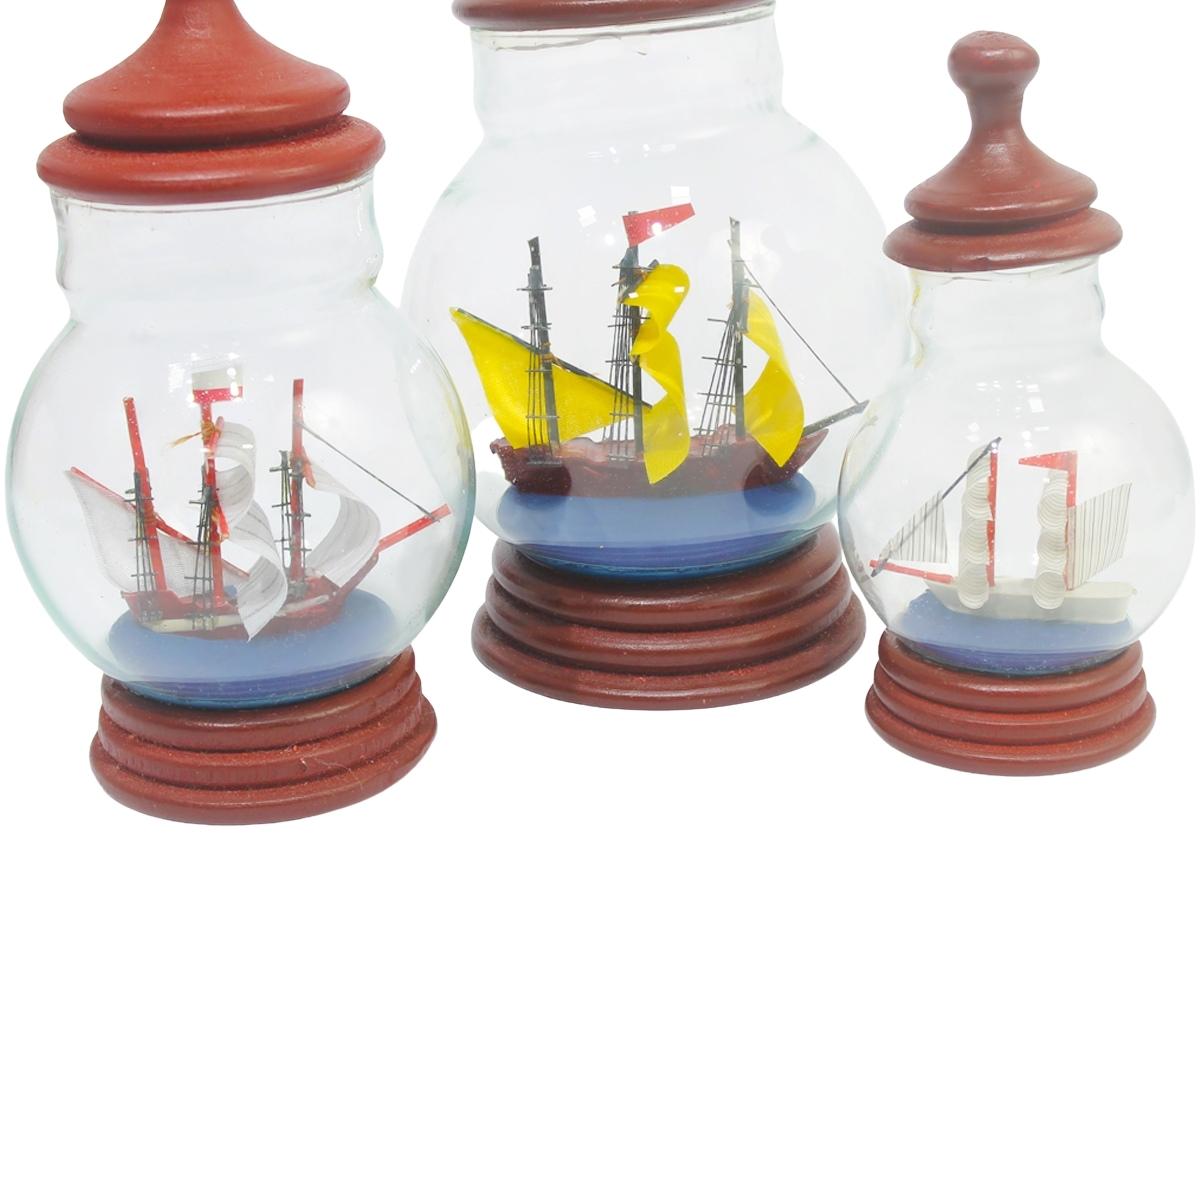 Maya Bazaar Creative Gifts for Home Pirate Ship Sailing Boat Inside Jar-Maya Bazaar